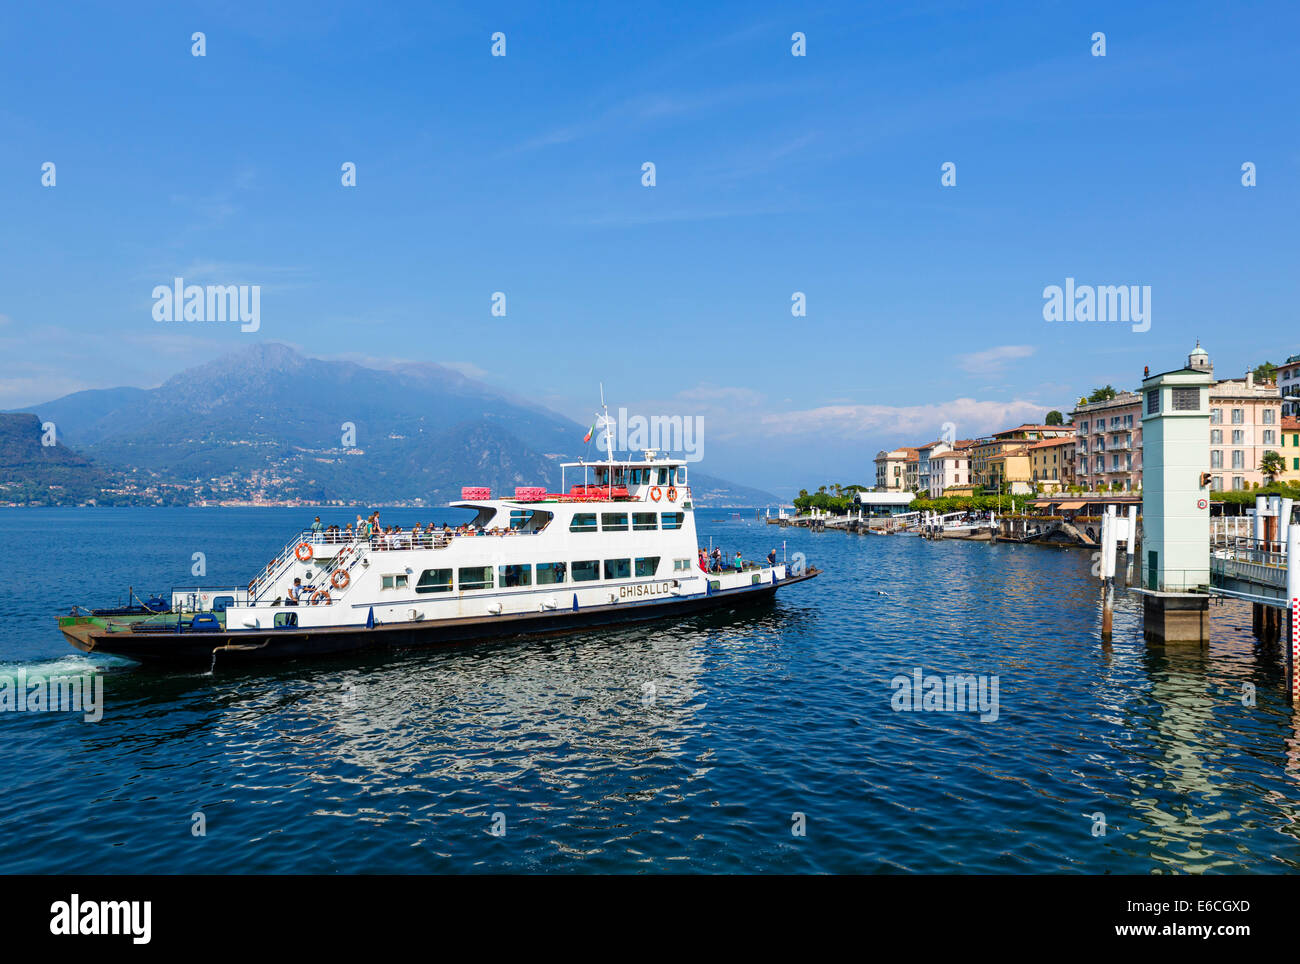 Autofähre kommend in docken an Bellagio, Comer See, Lombardei, Italien Stockfoto